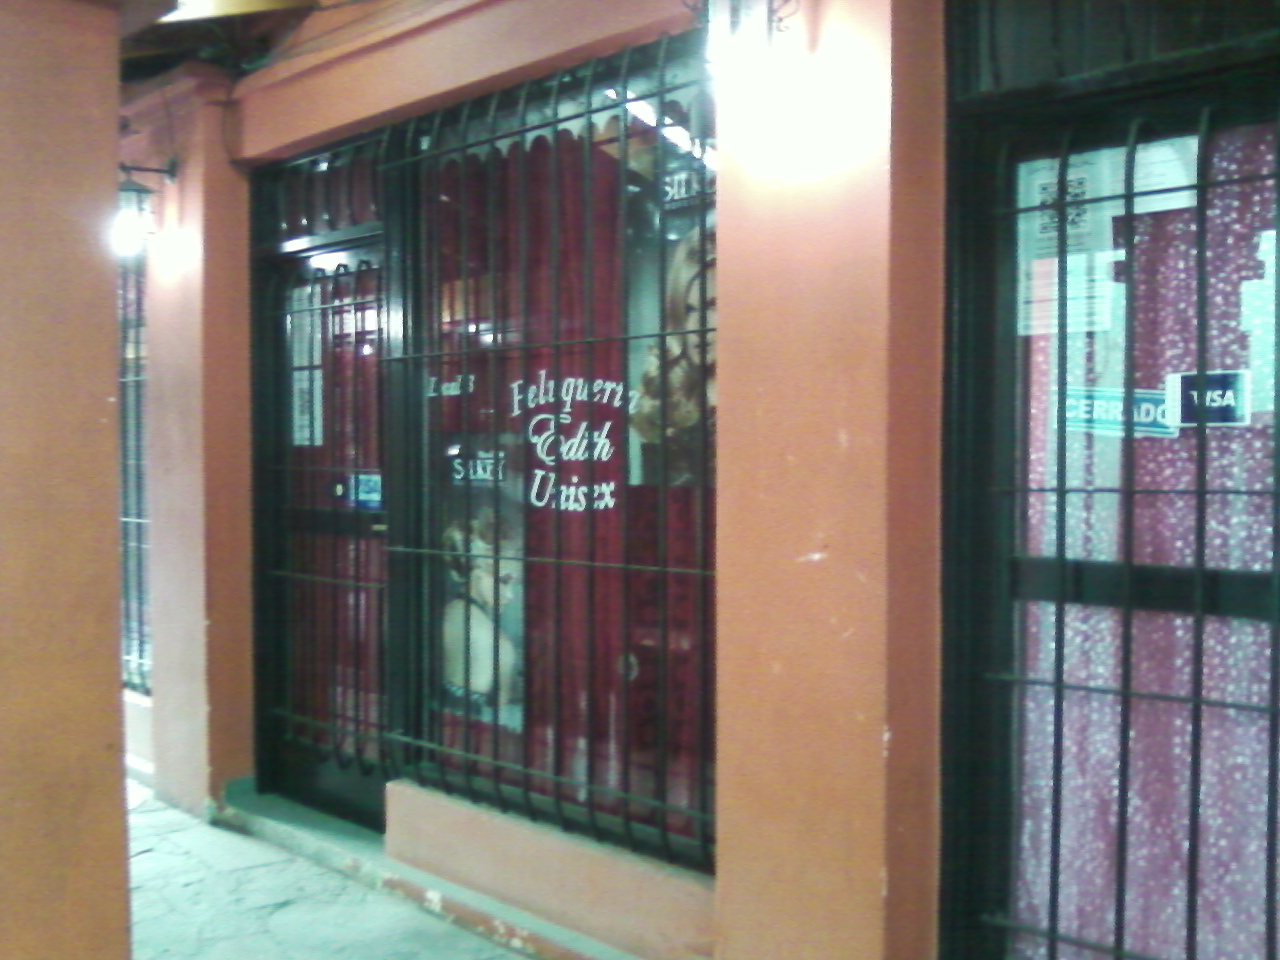 Local comercial en Galer�a La Reja a metros de estaci�n Glew, MUY BUENA ZONA COMERCIAL.